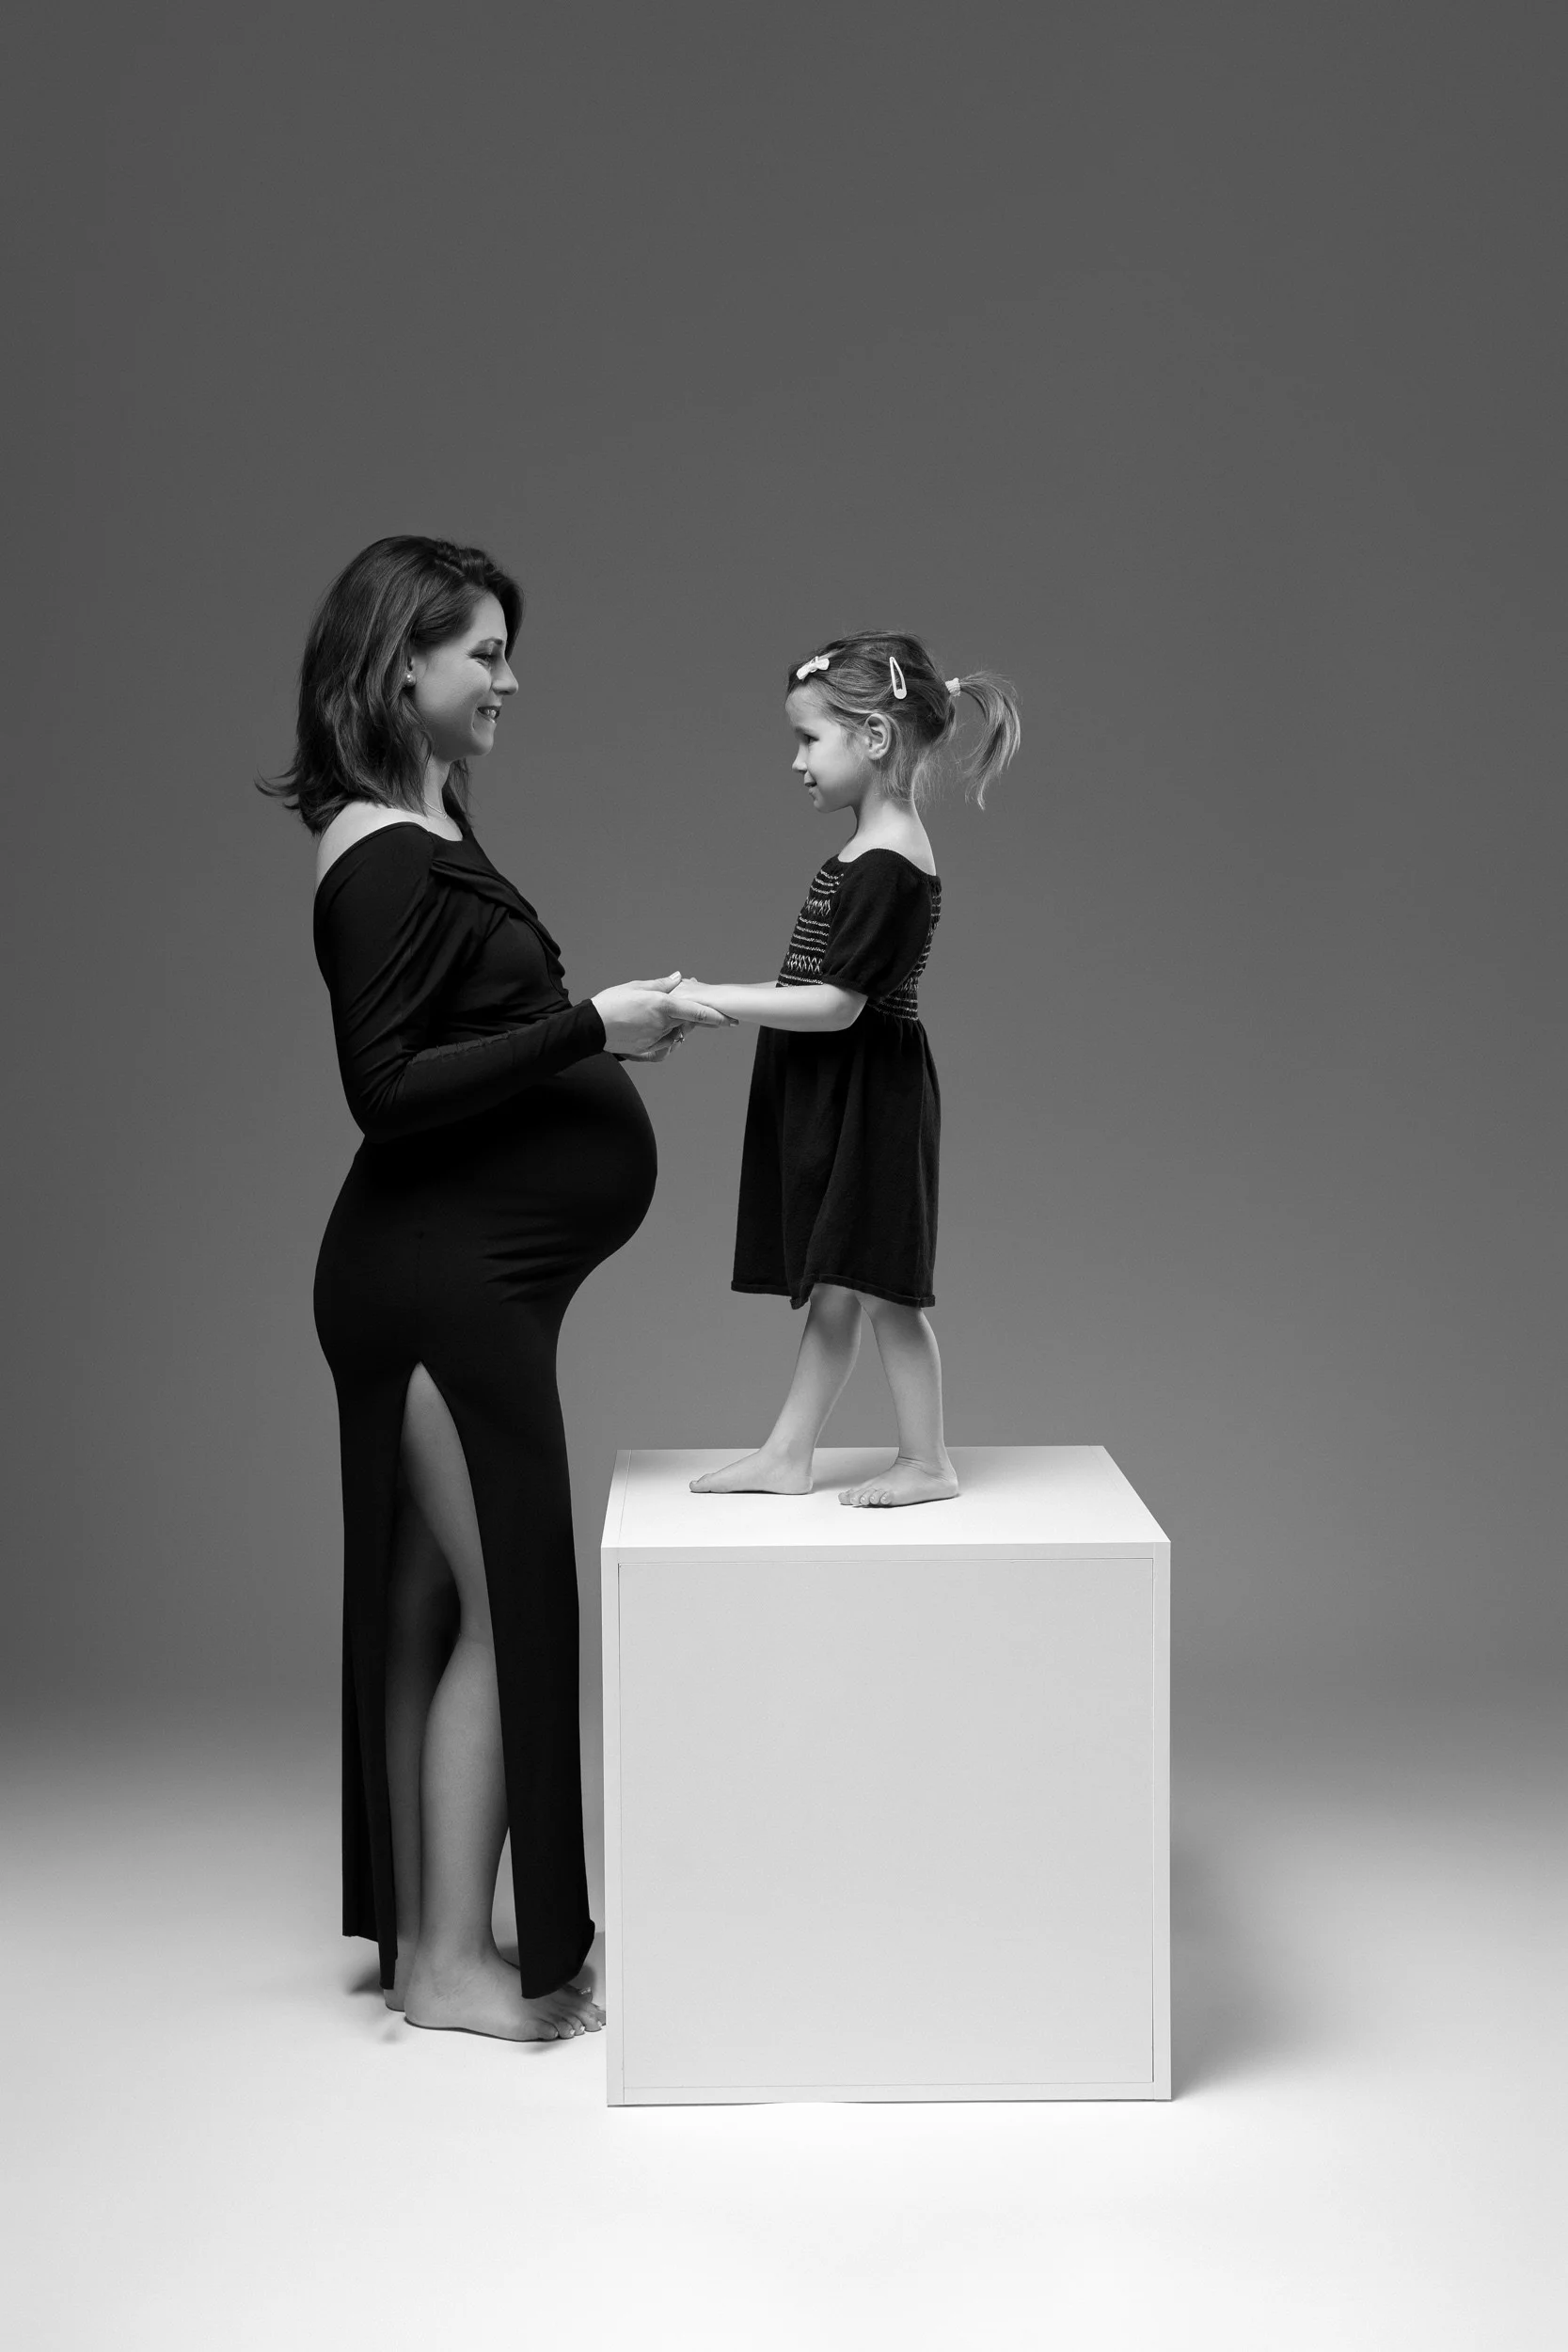 Noseča ženska in mlado dekle stojita na belem podstavku v črno-beli fotografiji. Ženska nosi črno obleko s stranskim razporkom, dekle pa črno obleko z mašno na hrbtu. Ozadje je enobarvno sivo.